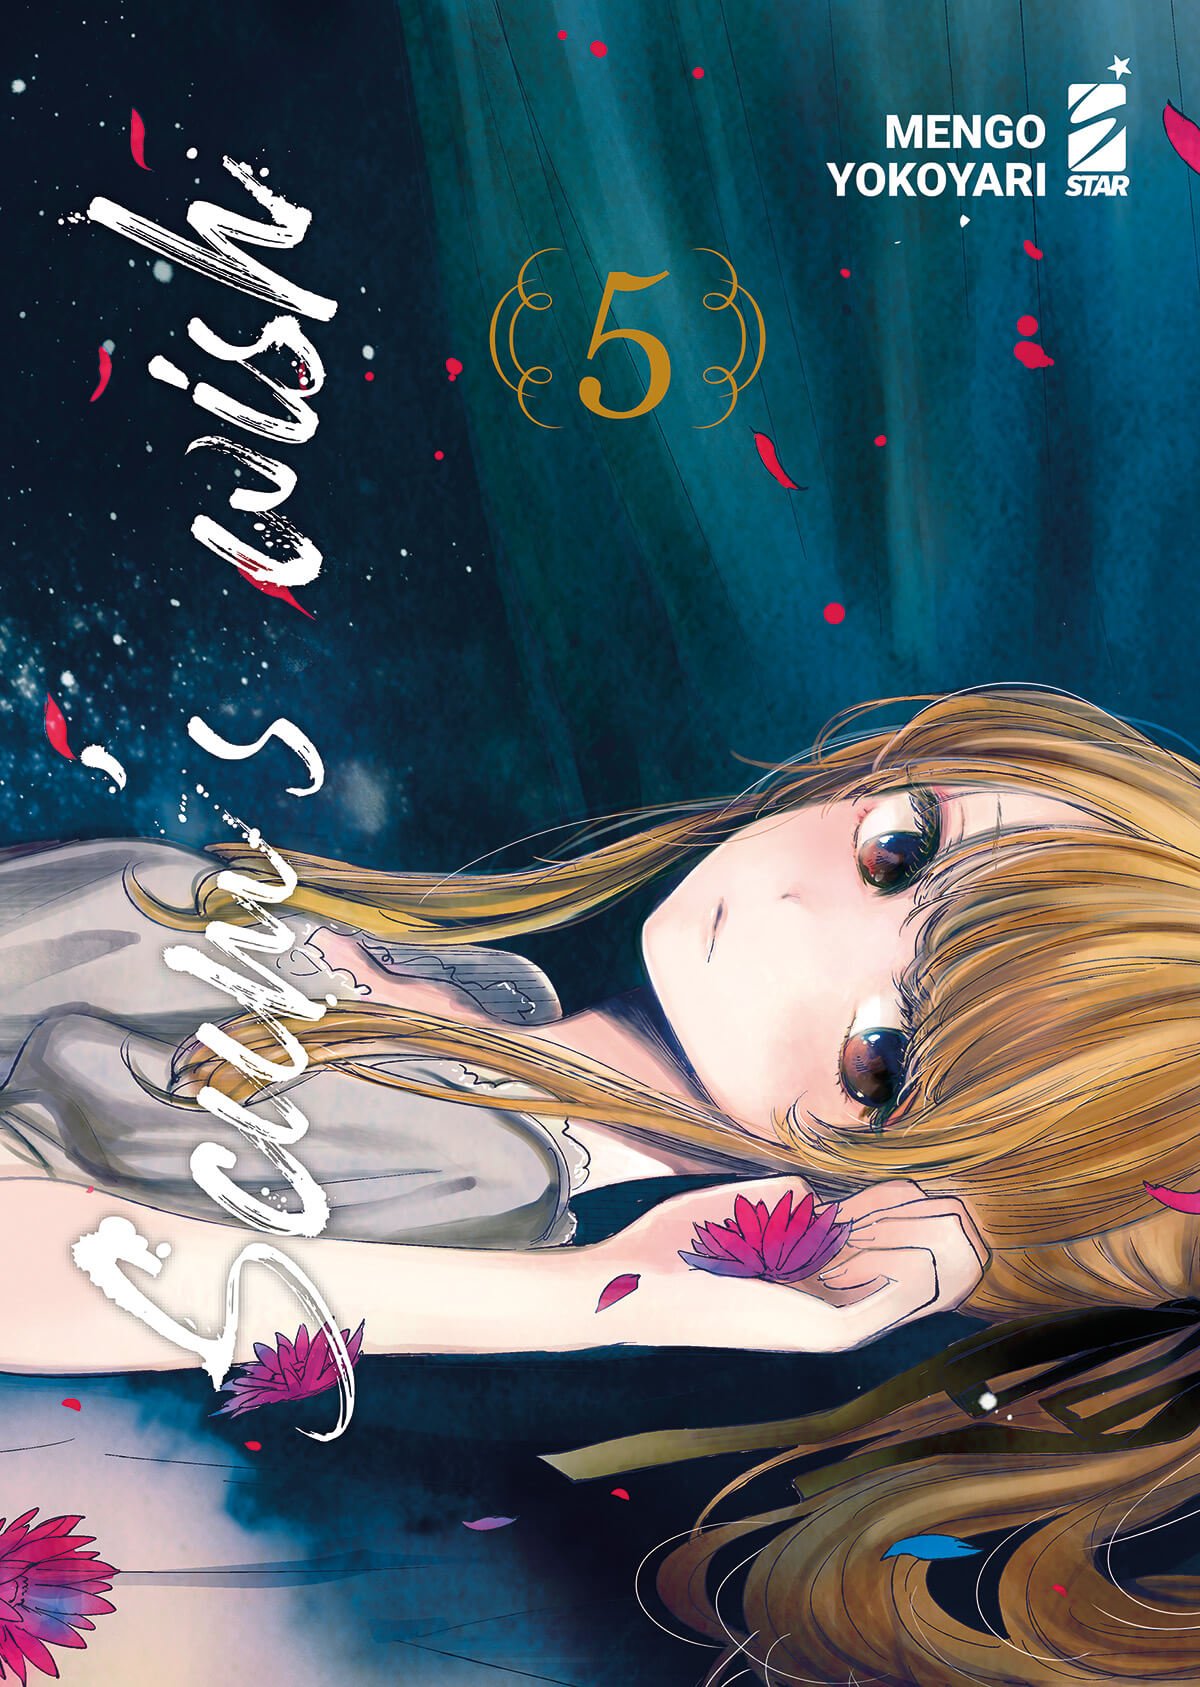 Scum's Wish 5, parmi les sorties mangas de Star Comics du 5 juillet 2023.